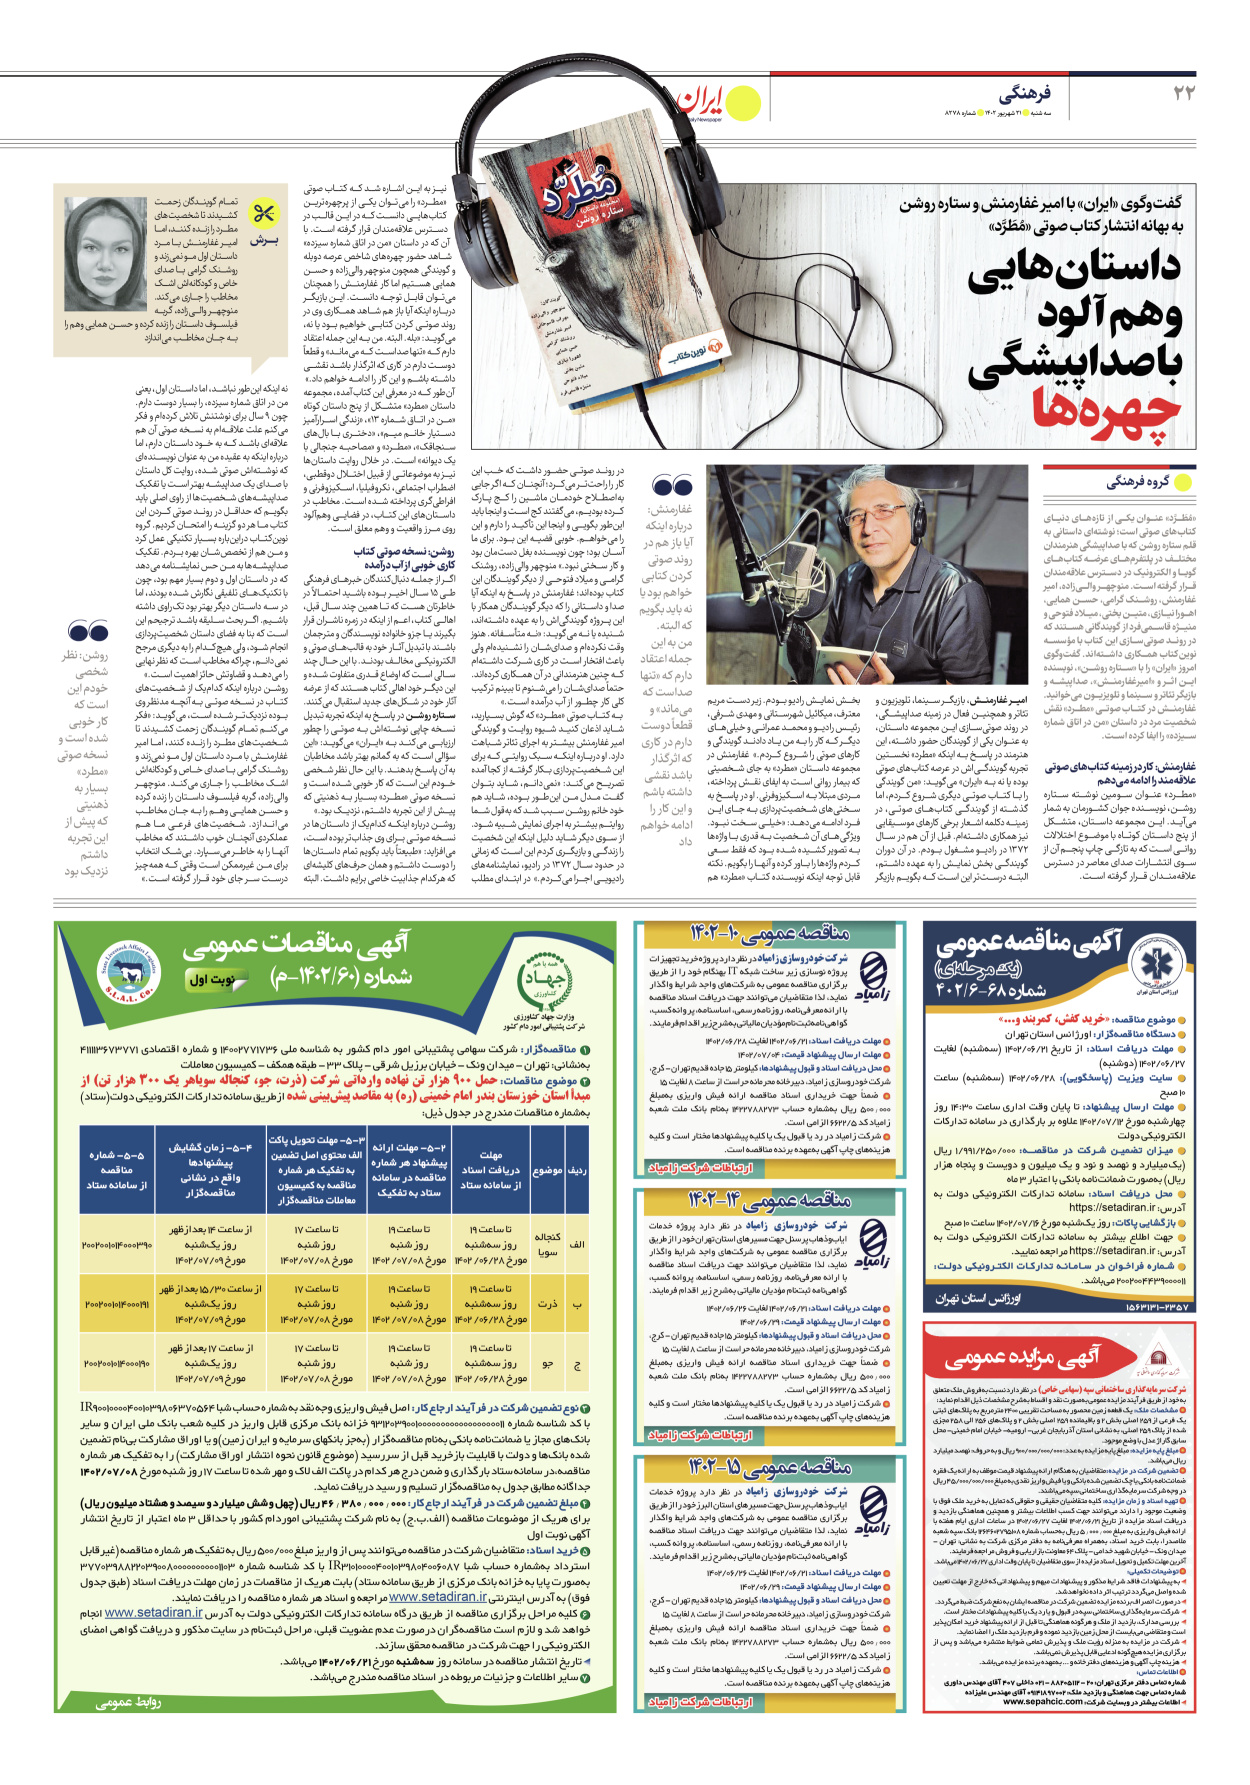 روزنامه ایران - شماره هشت هزار و دویست و هفتاد و هشت - ۲۱ شهریور ۱۴۰۲ - صفحه ۲۲